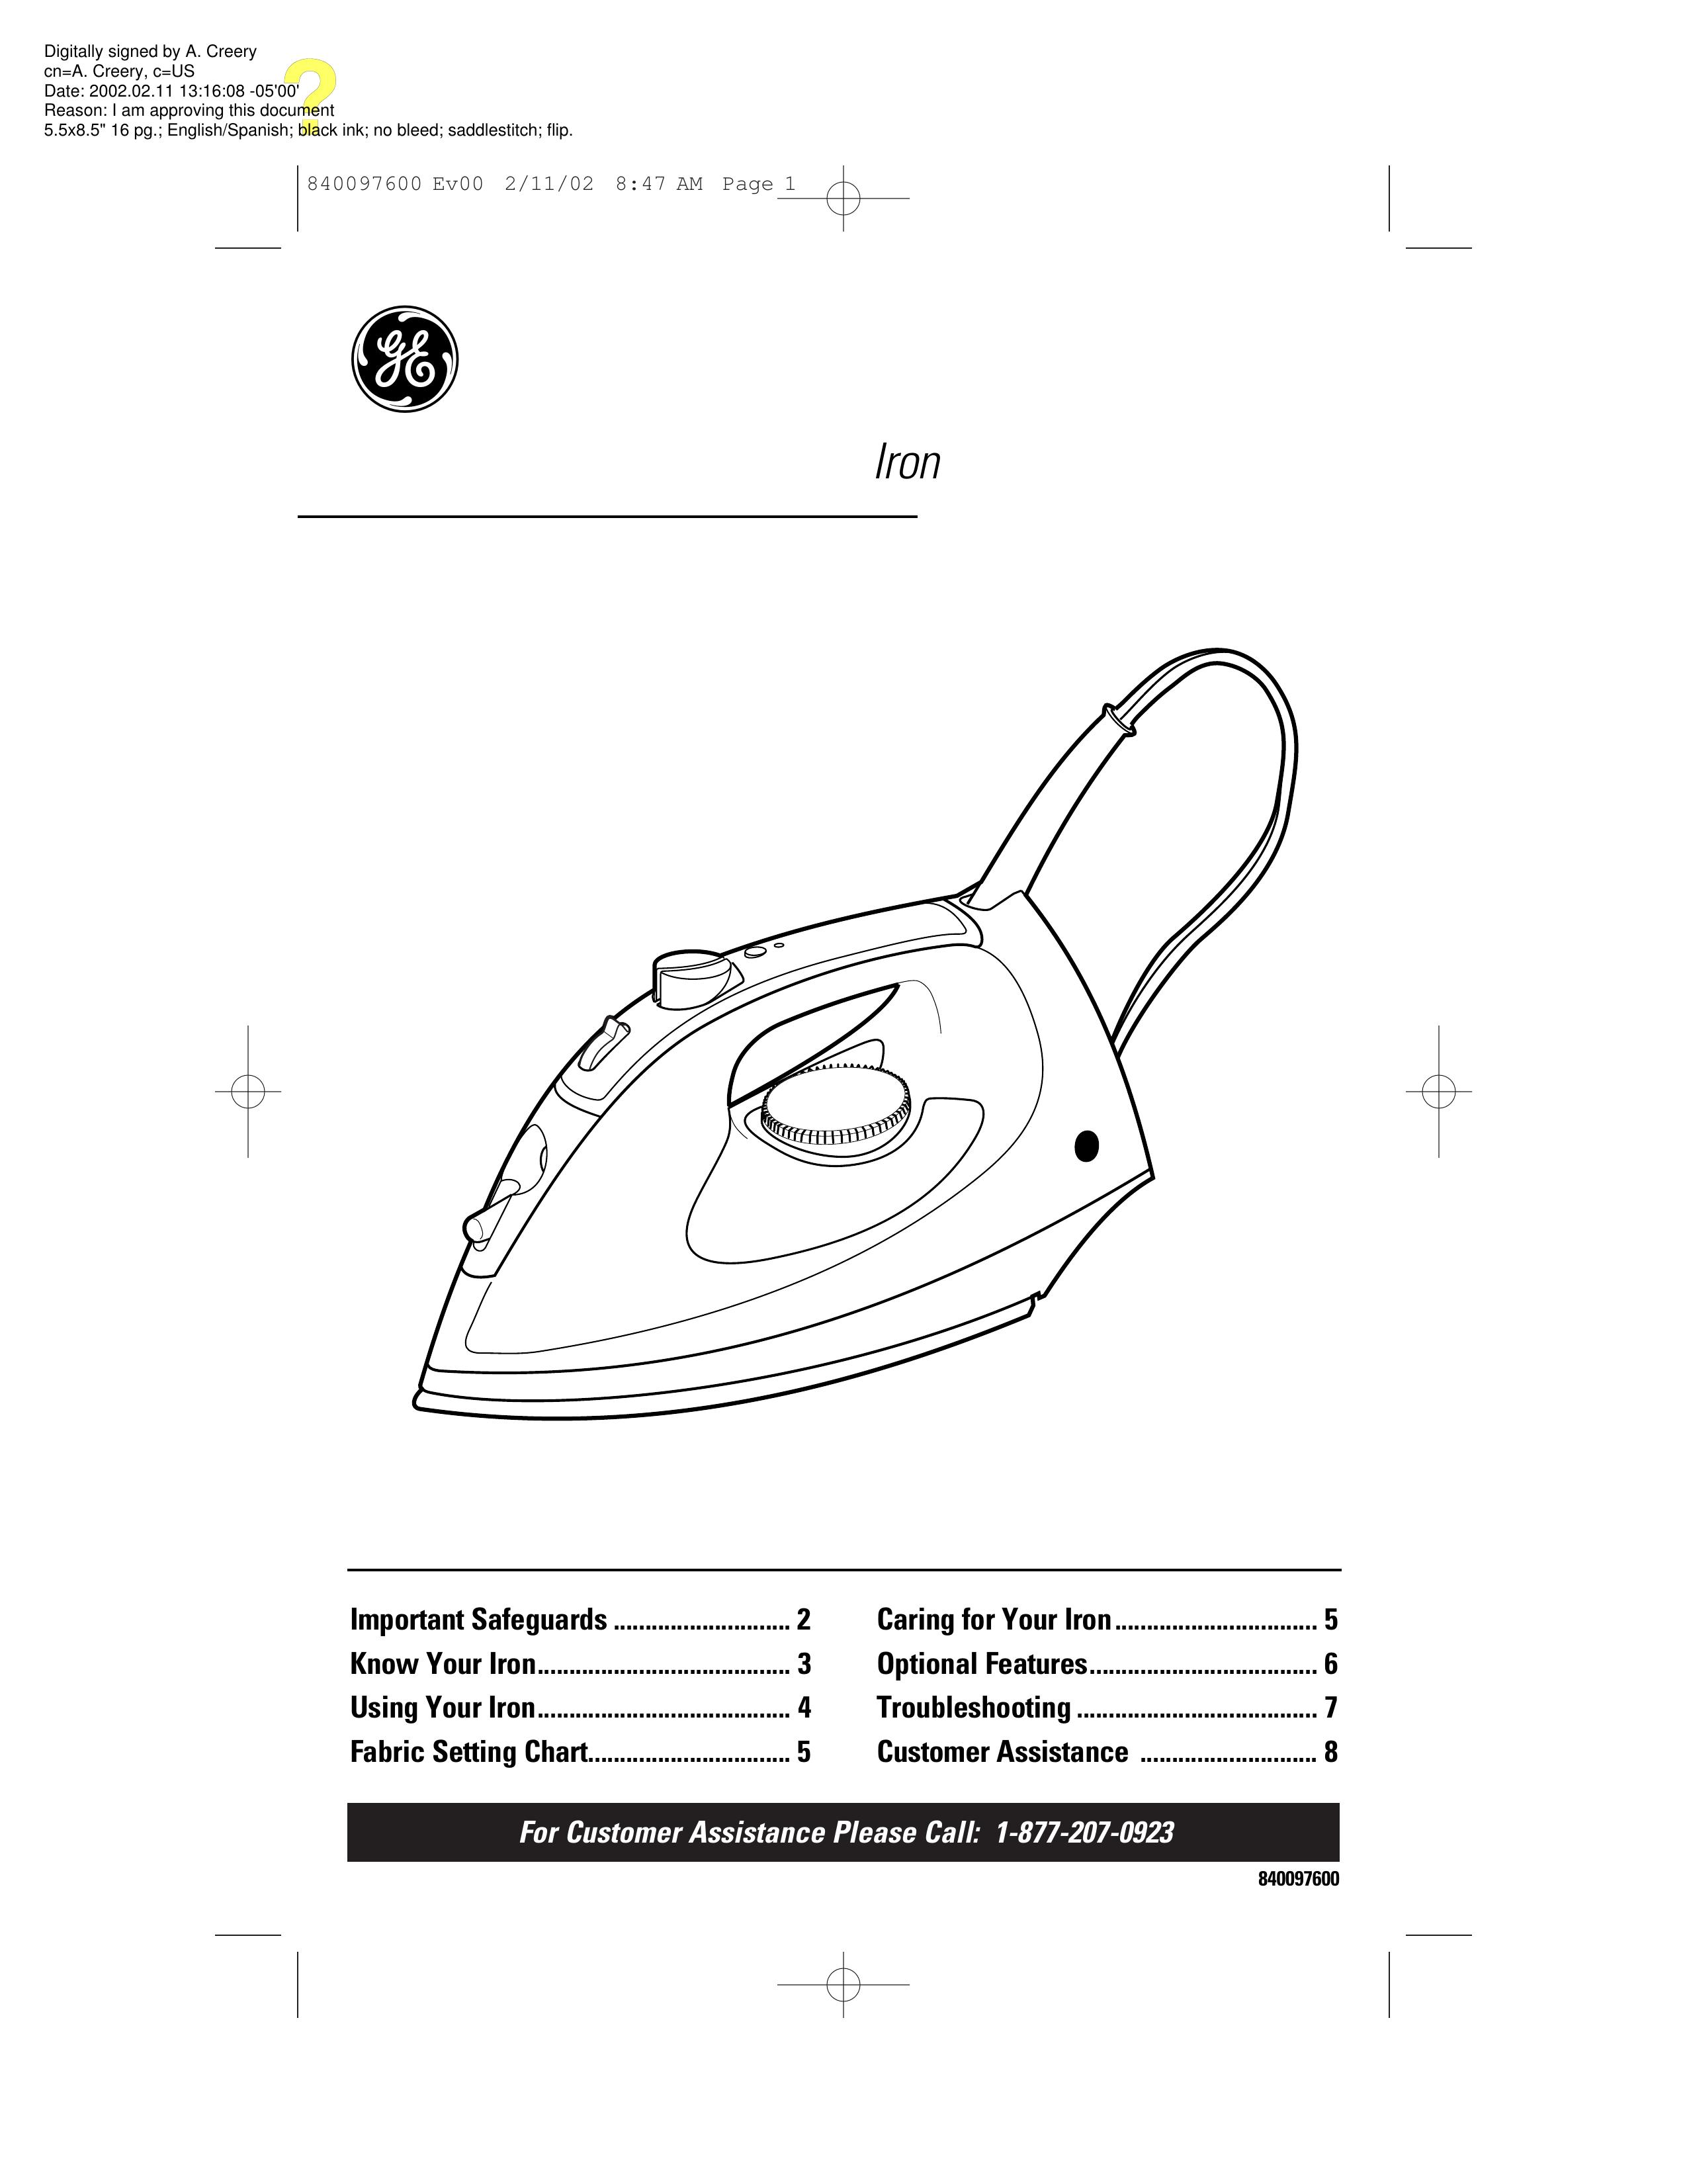 GE 106792 Iron User Manual